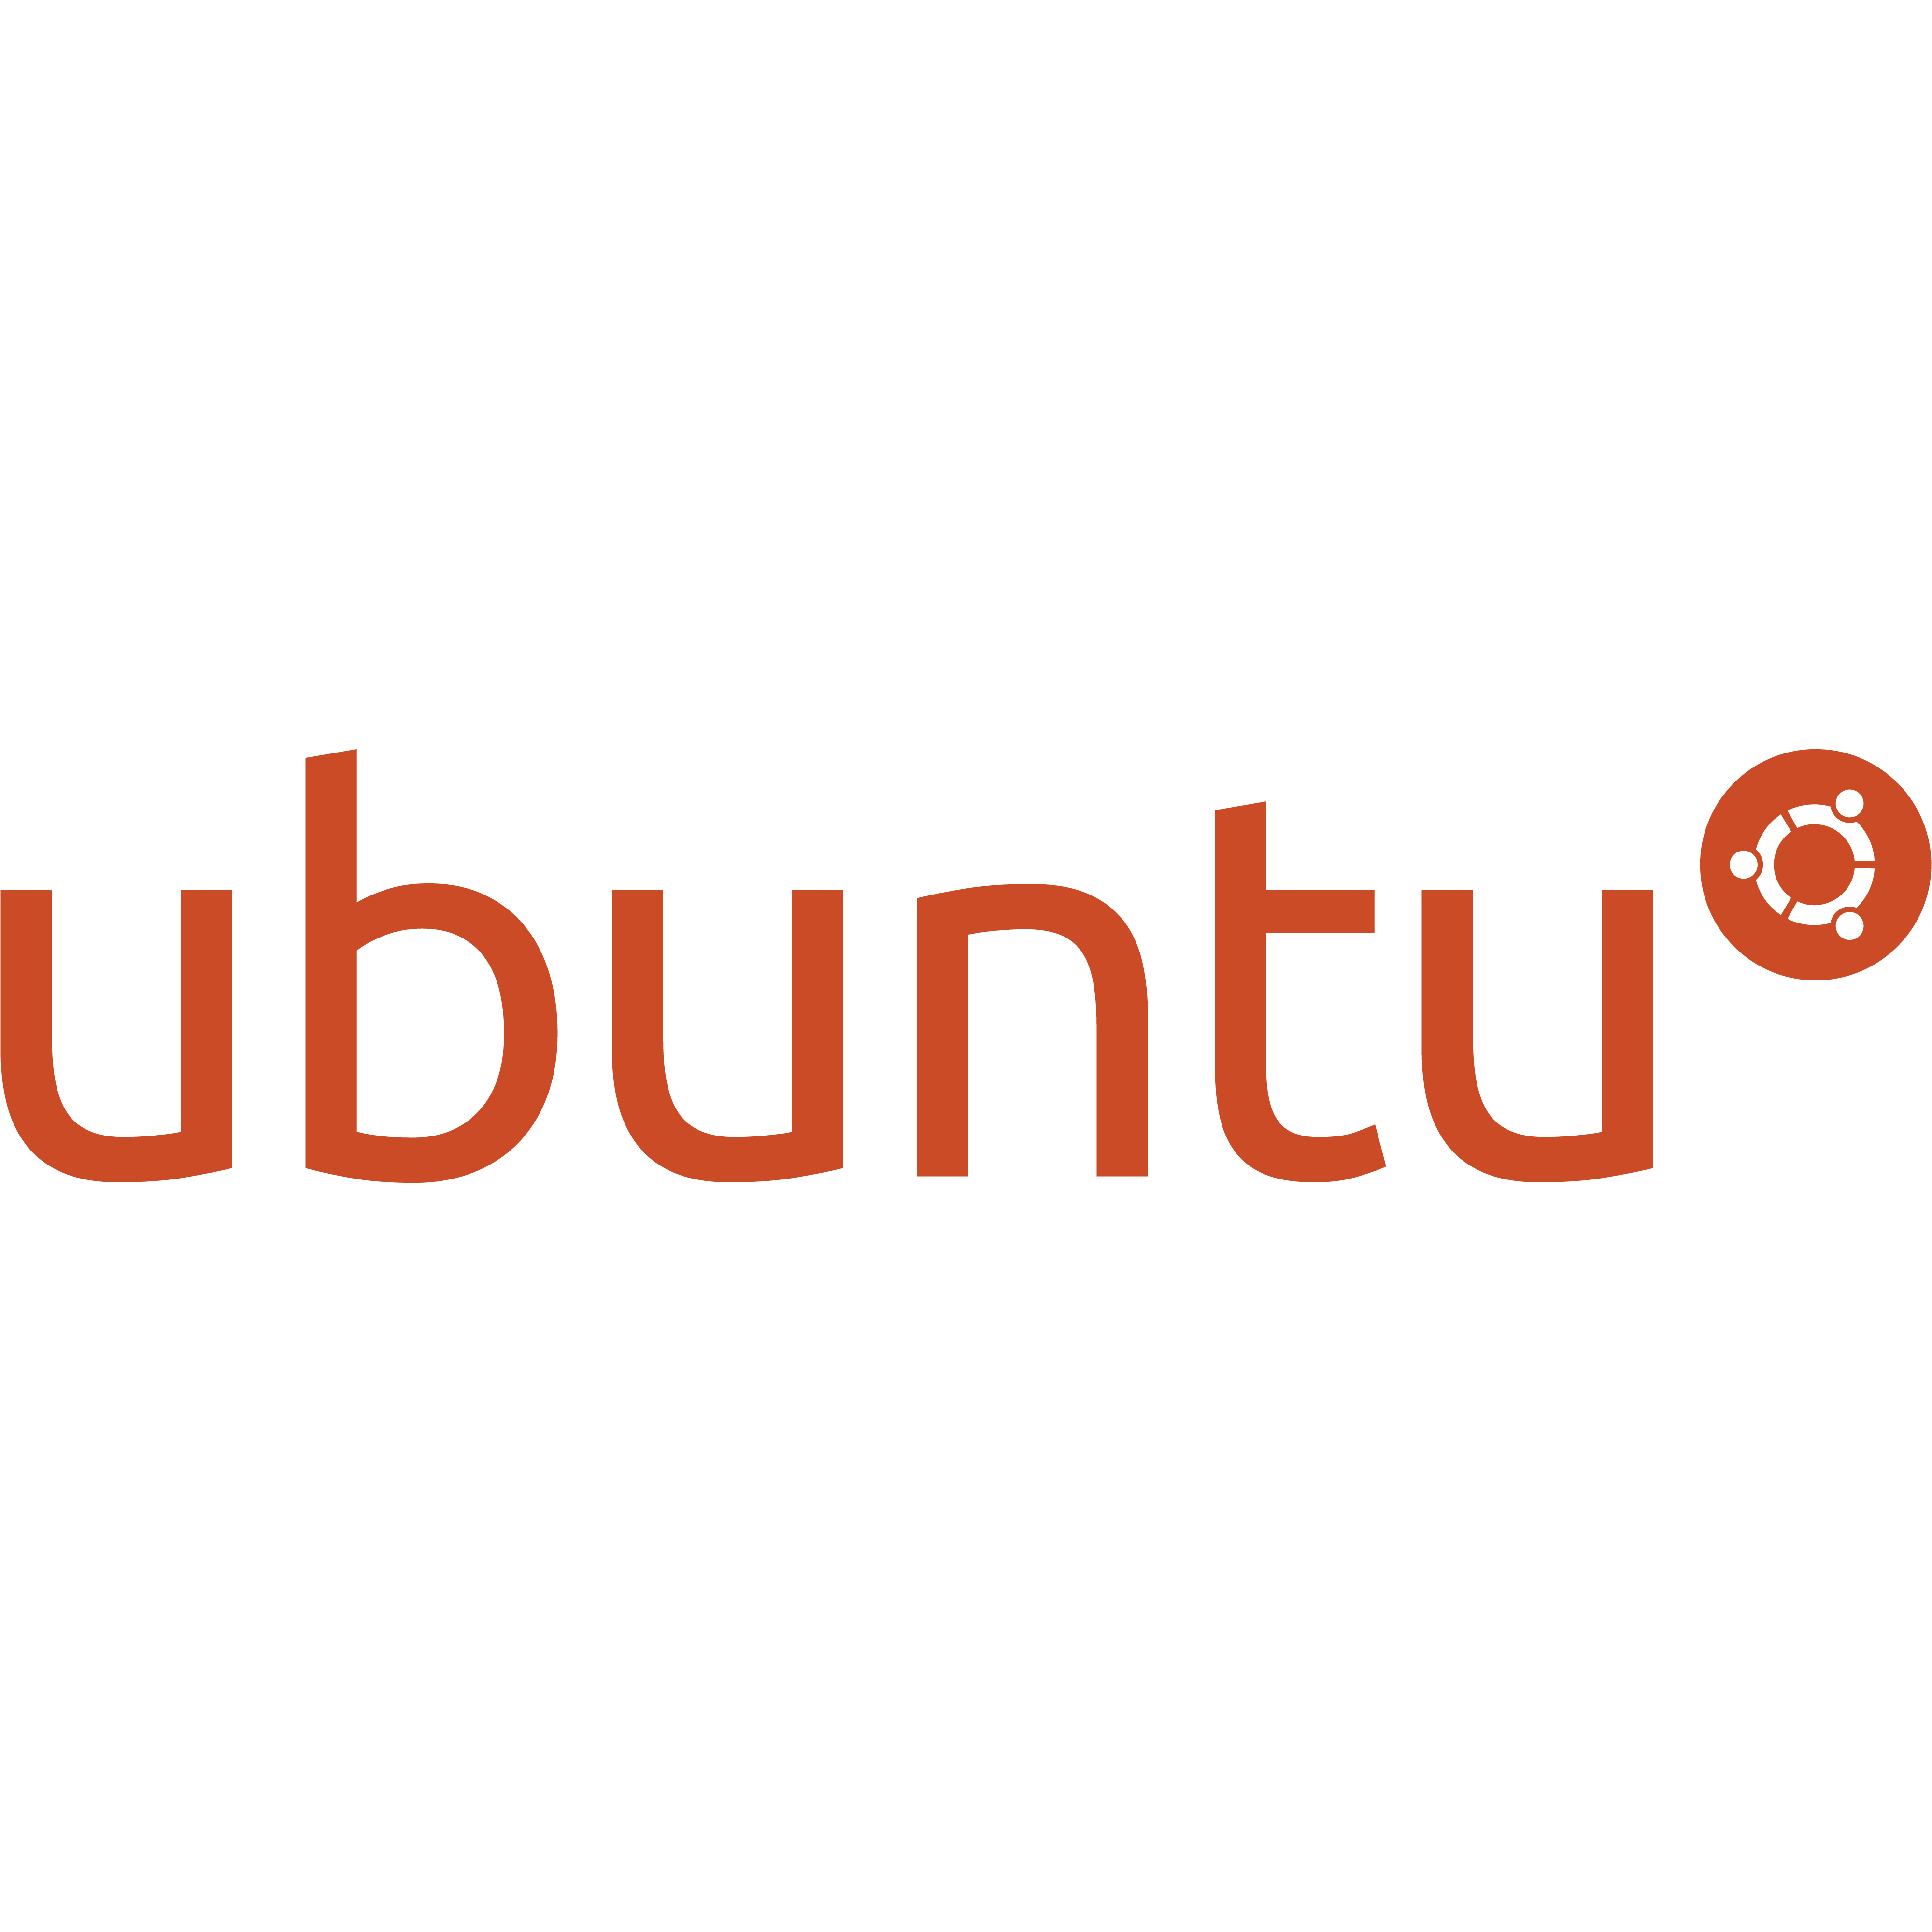 Ubuntu orange logo